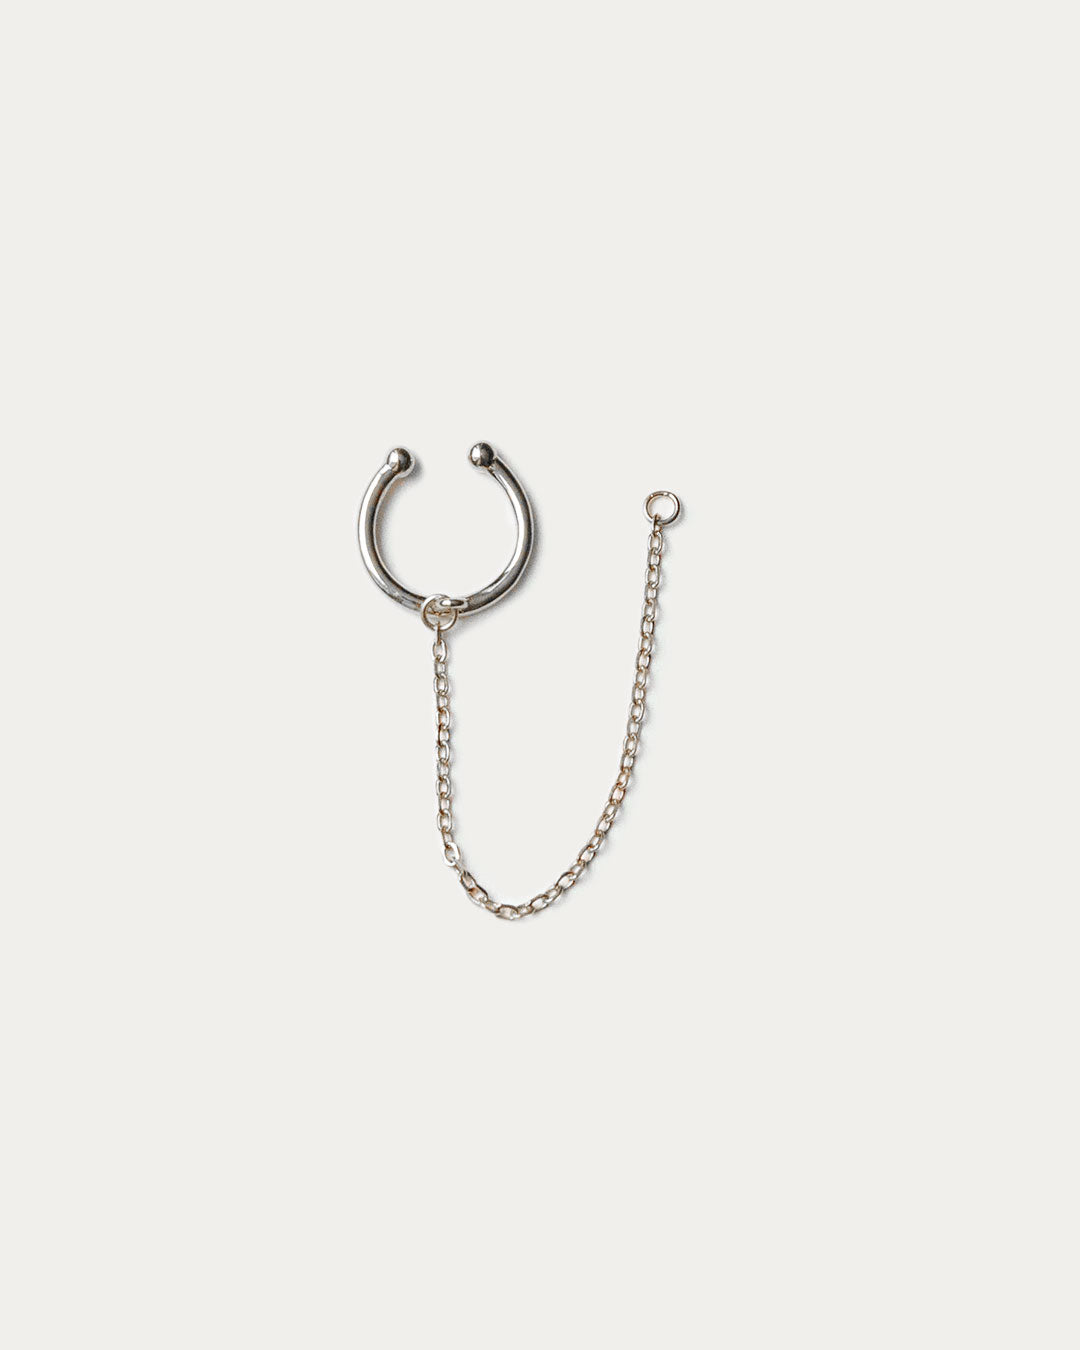 Chain Cuff Ear Jacket - Silver